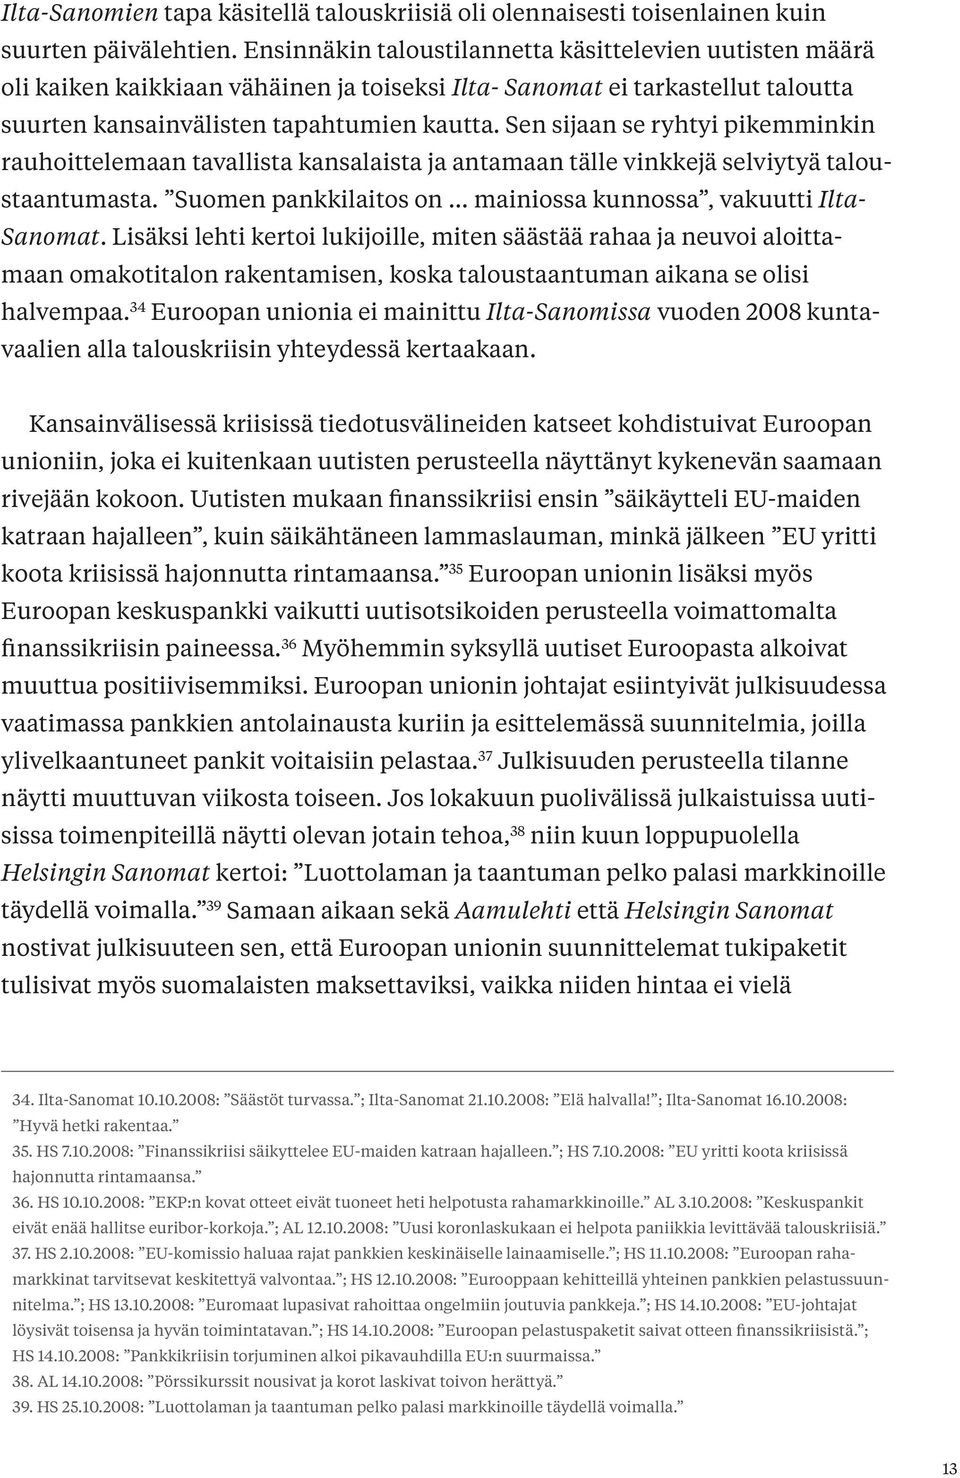 Sen sijaan se ryhtyi pikemminkin rauhoittelemaan tavallista kansalaista ja antamaan tälle vinkkejä selviytyä taloustaantumasta. Suomen pankkilaitos on... mainiossa kunnossa, vakuutti Ilta- Sanomat.